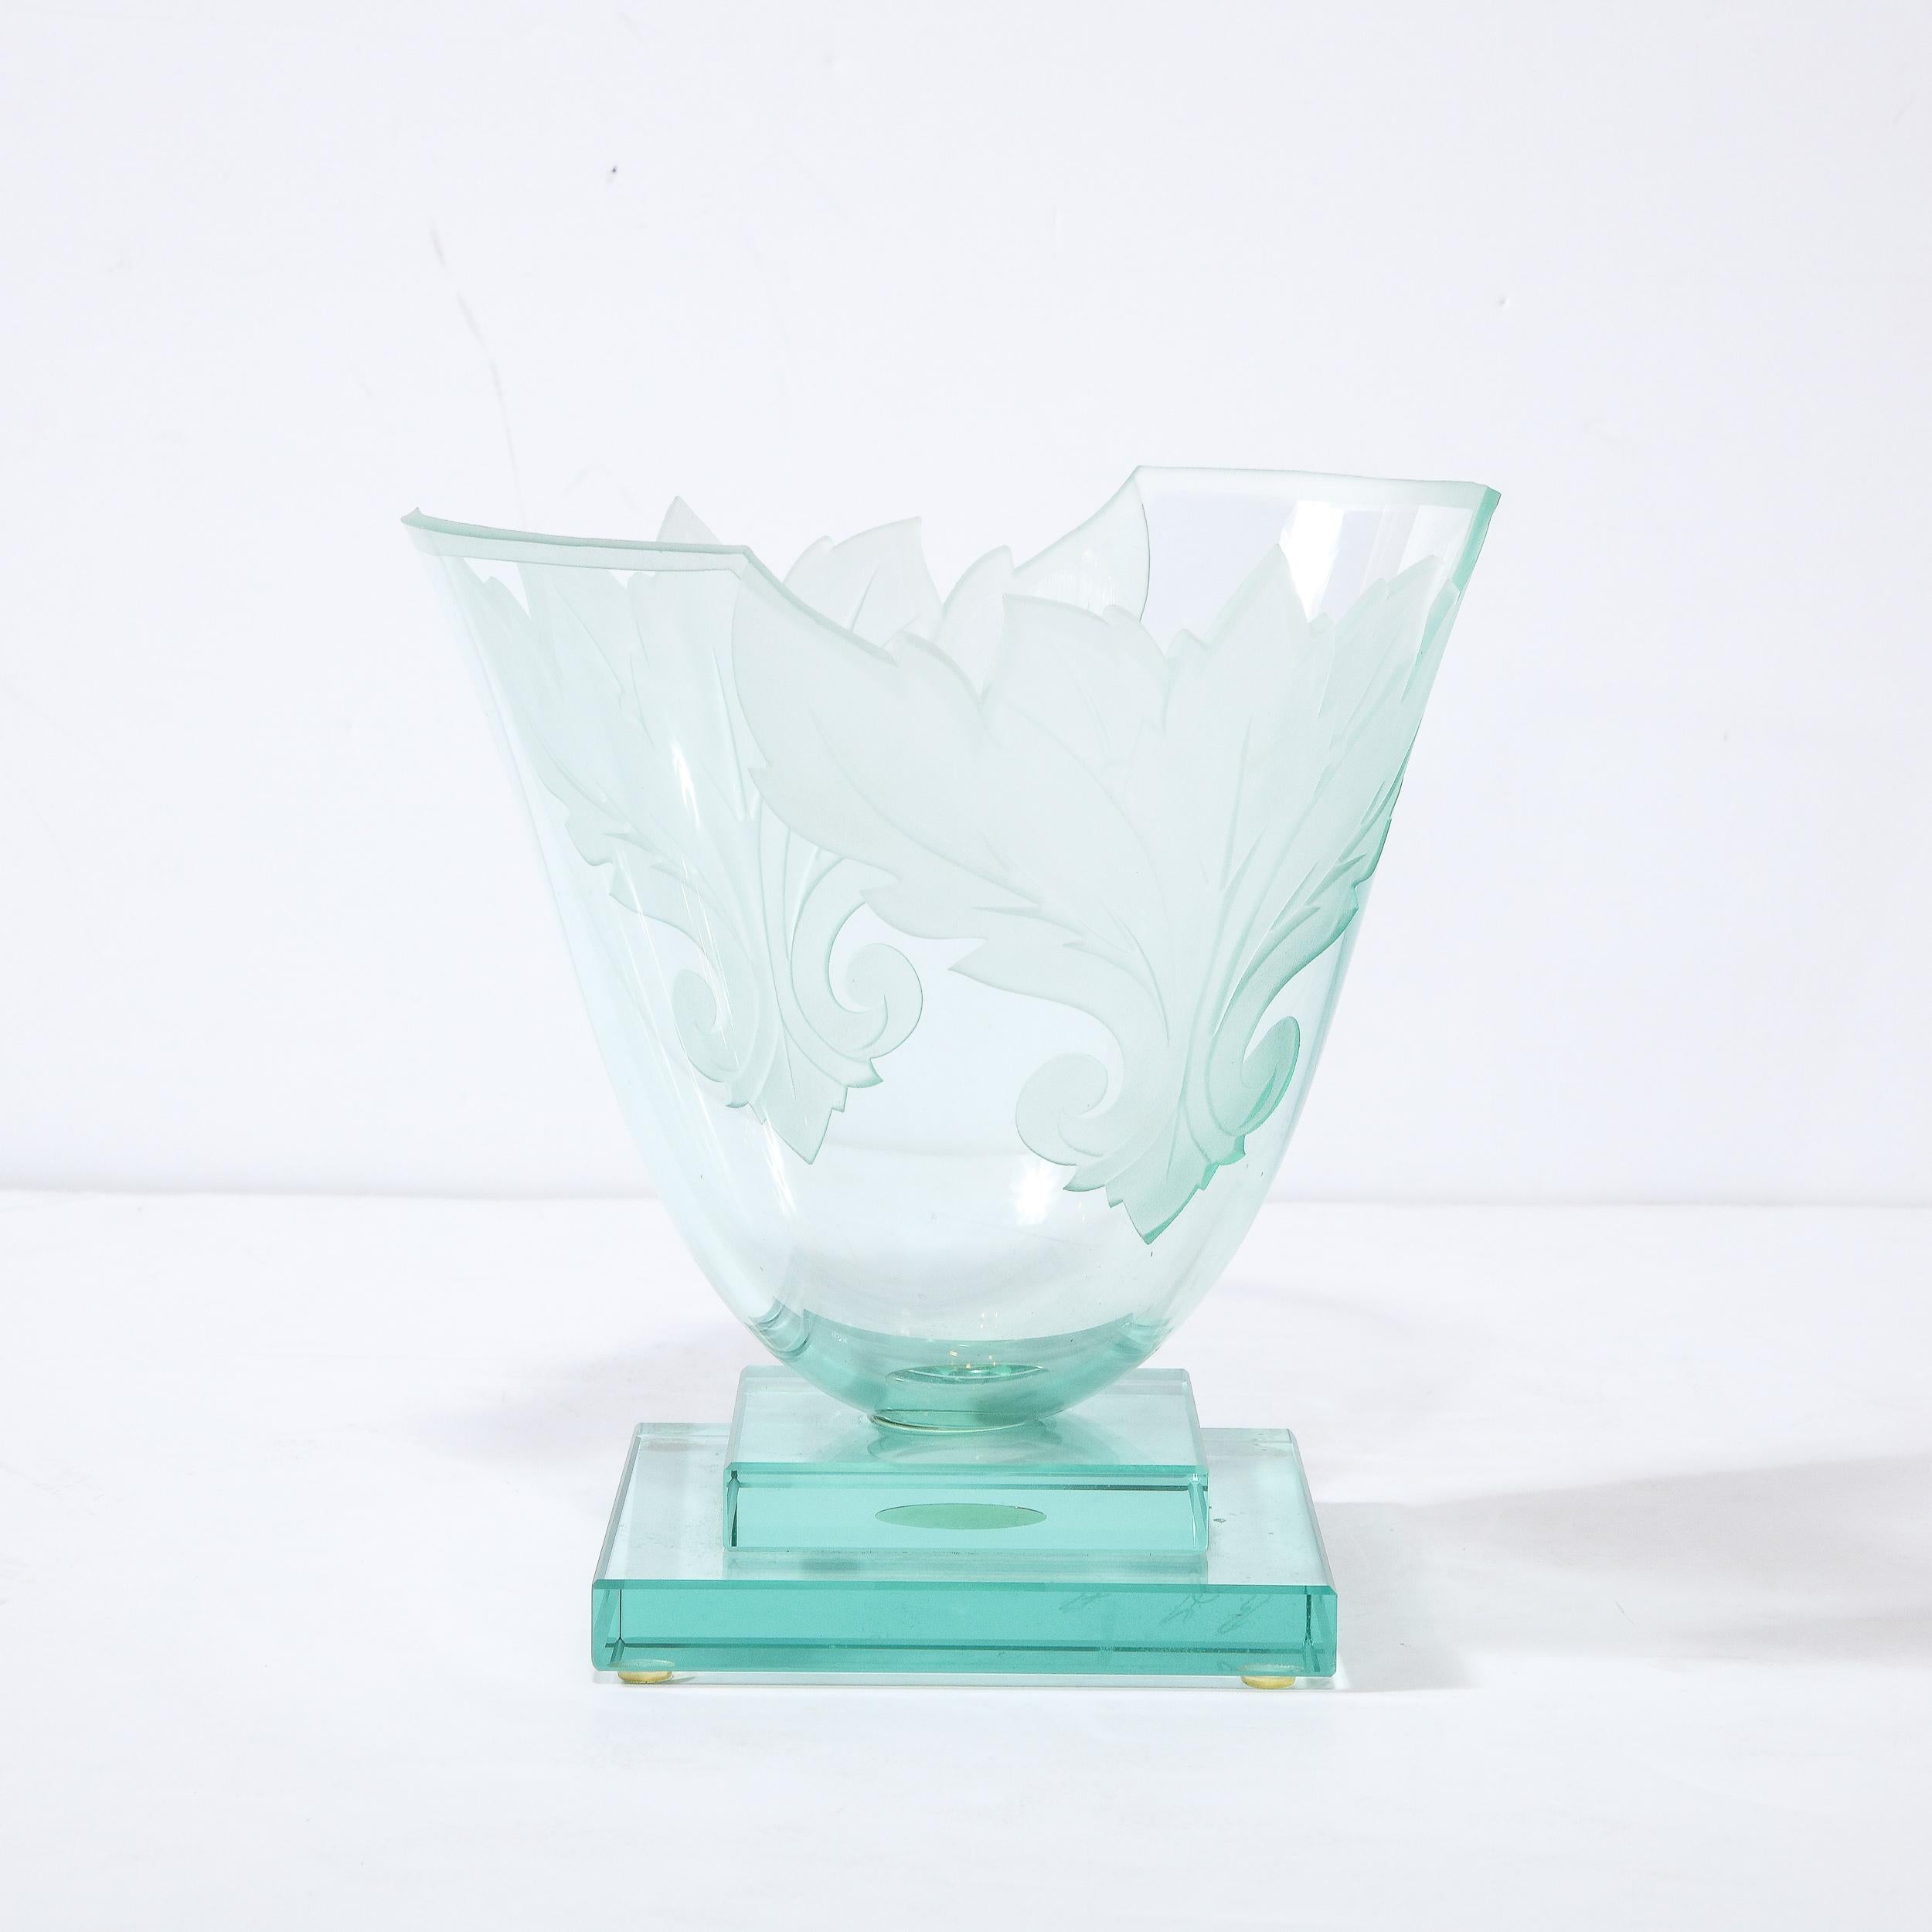 Ce superbe vase moderniste a été réalisé par l'estimé artisan Robert Guenter aux États-Unis vers 1990. Elle se caractérise par une base géométrique de style gratte-ciel, composée de formes rectilignes empilées d'où s'élève un corps en forme d'urne,